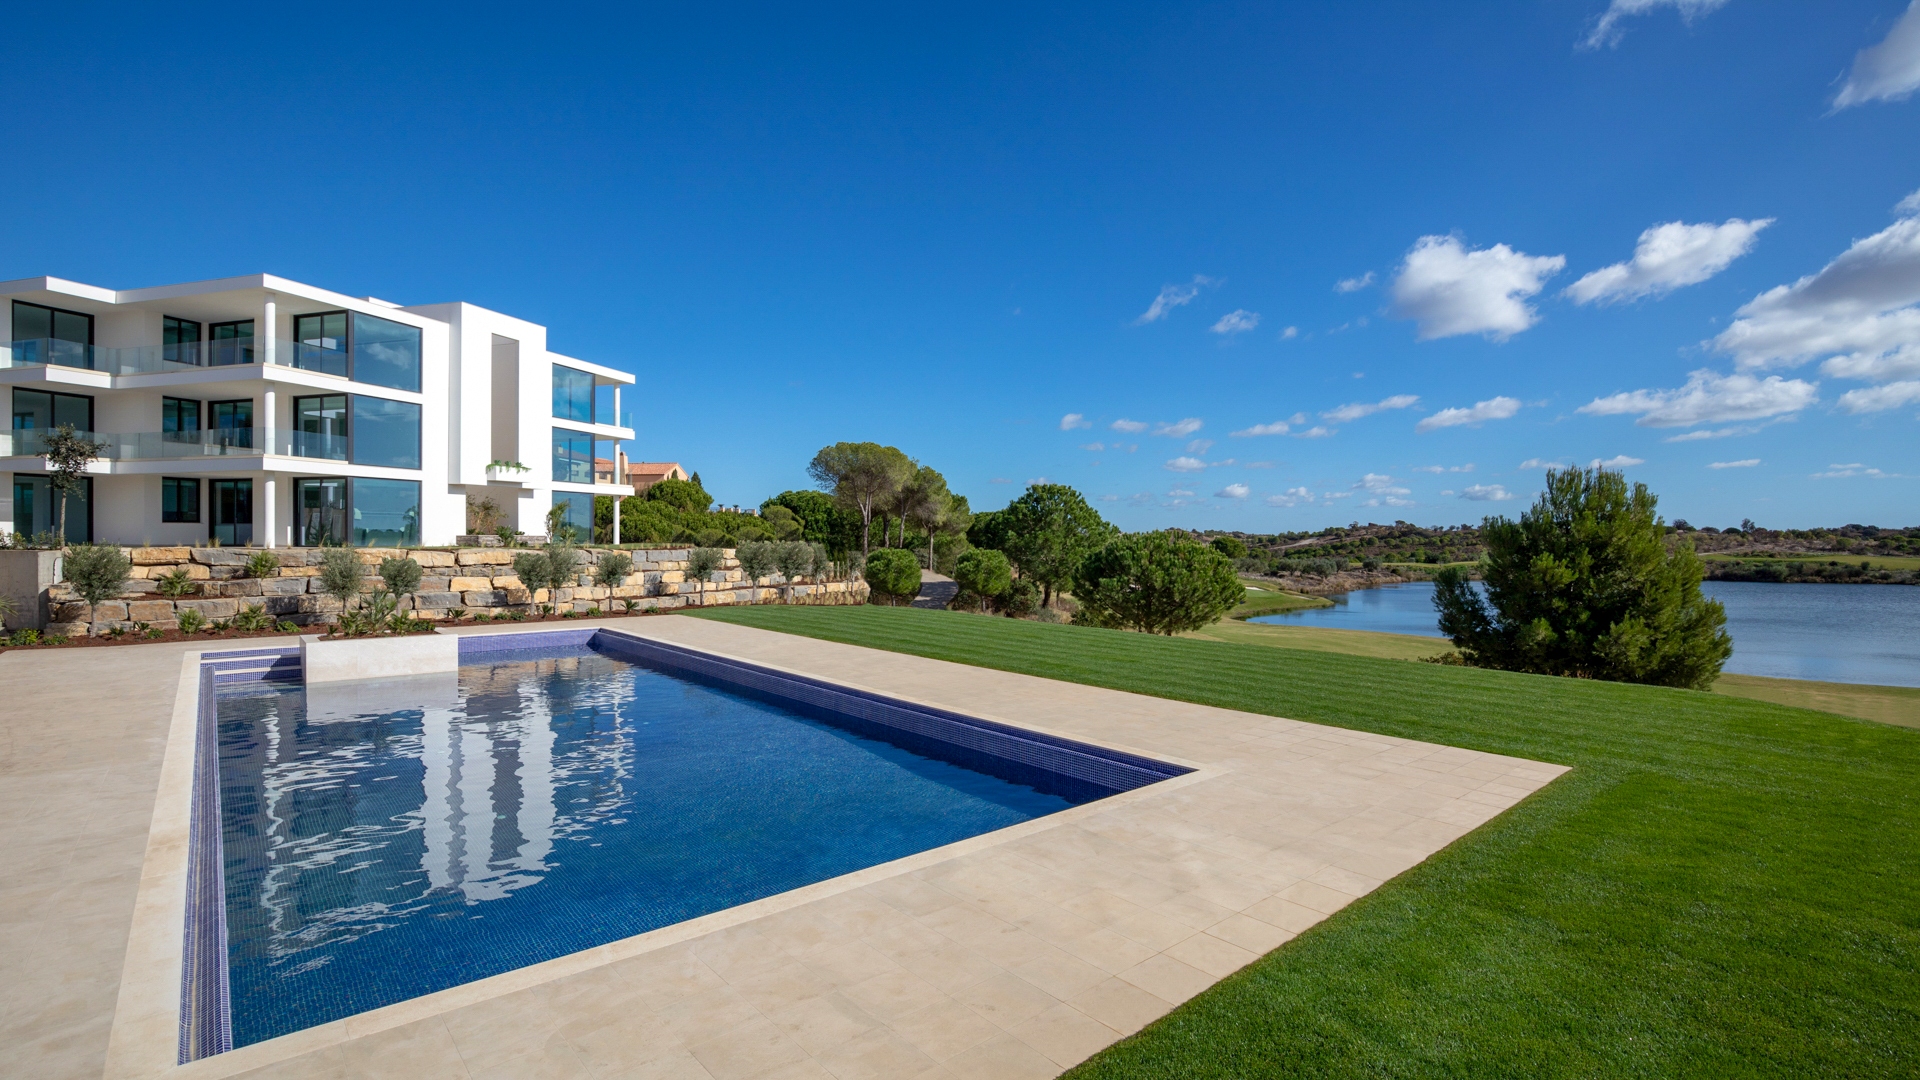 Luxuriöse 3 SZ Penthouse Maisonette Apartments mit Meerblick auf einem der Besten Golfplätze Europas, Ost Algarve | TV1835 Exklusive, luxuriöse Penthouse Apartments mit atemberaubendem Blick über den See und den Golfplatz bis hin zum Meer. In der Nähe des Clubhausesdes Monte Rei Golf & Country Club mit wunderschön angelegten Gärten und großem Gemeinschaftspool gelegen.